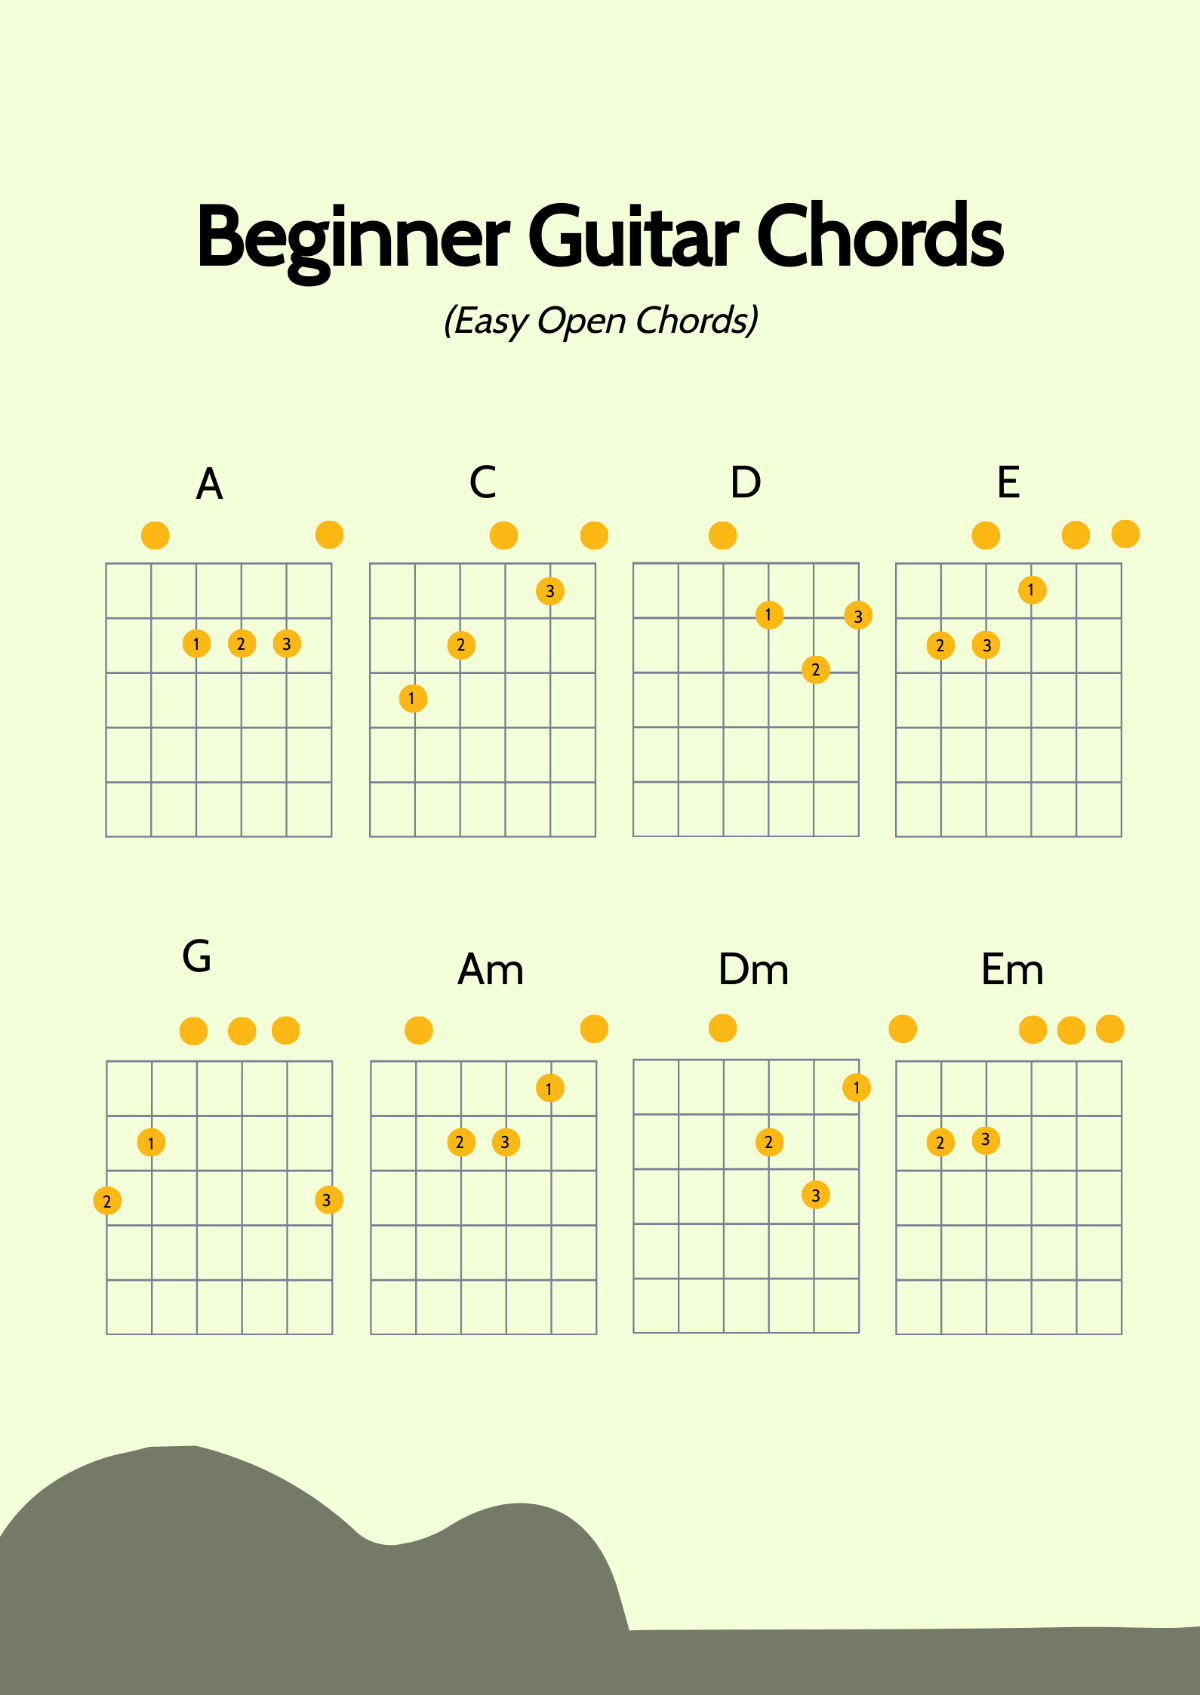 Beginner Guitar Chords Chart Template